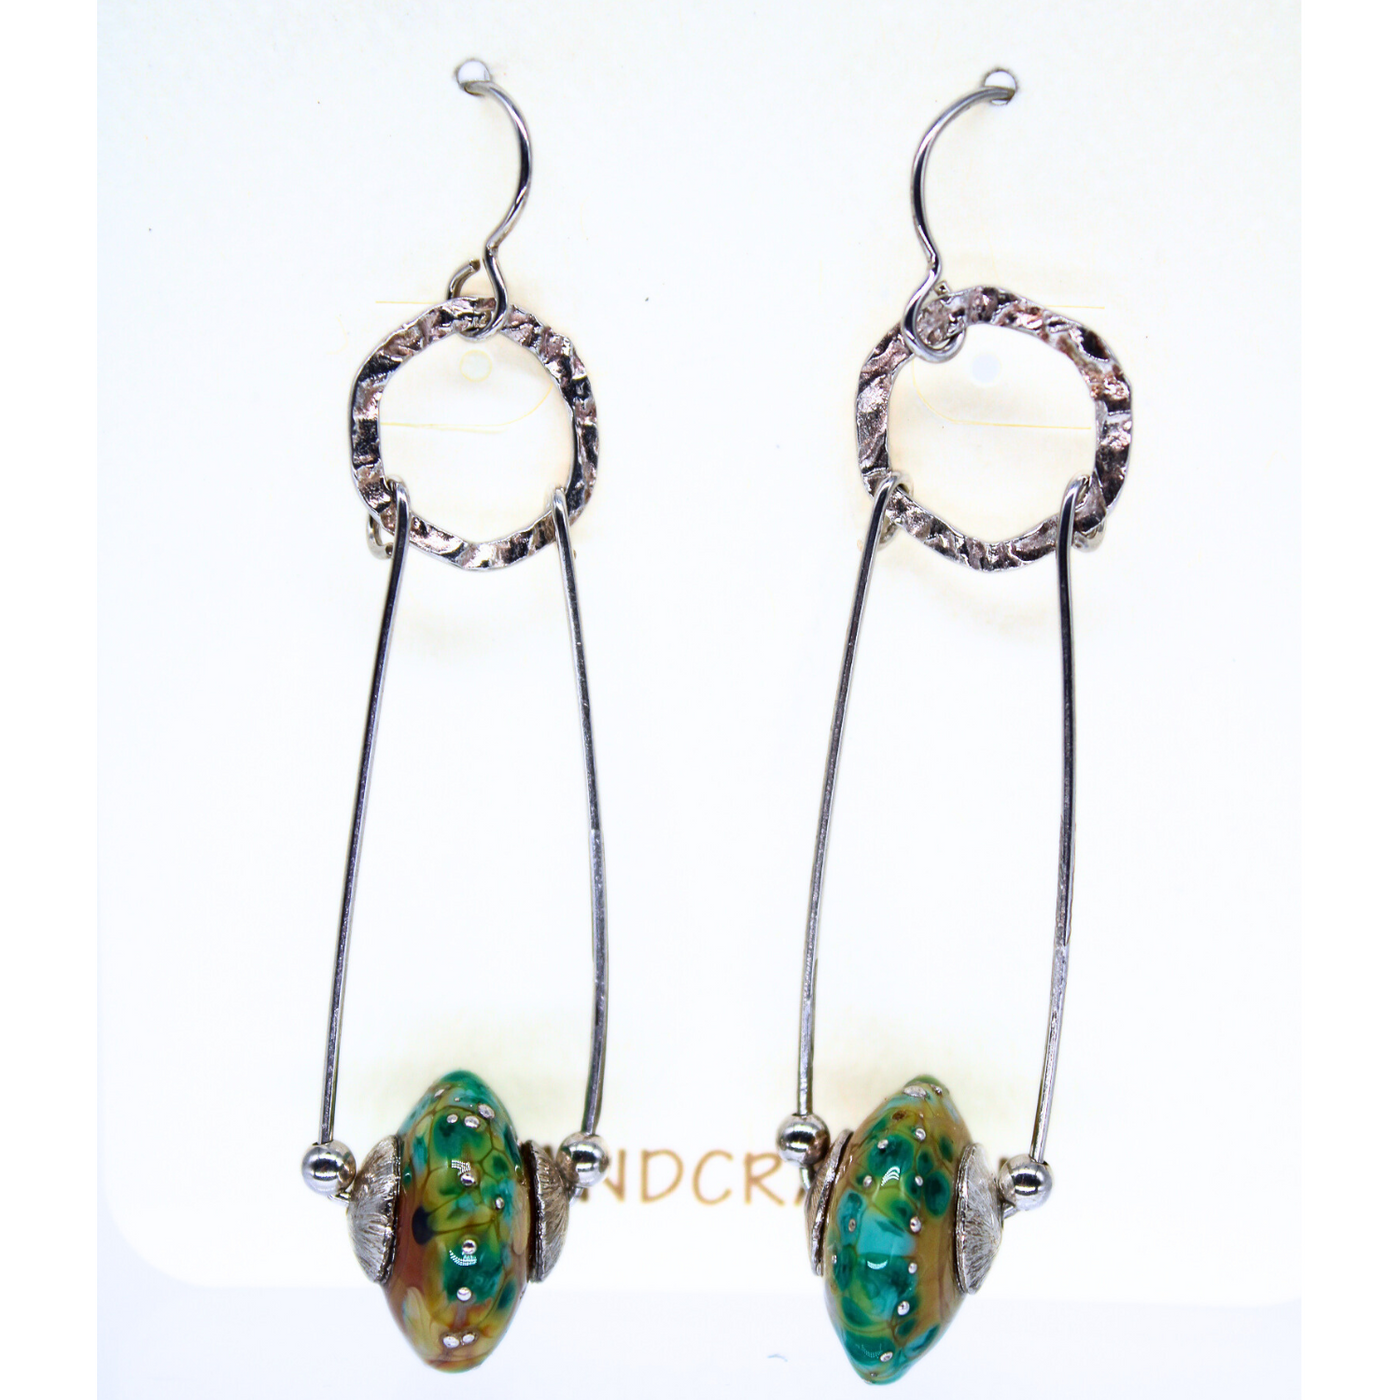 GEB-173 Multicolored Glass Bead Swing Earrings